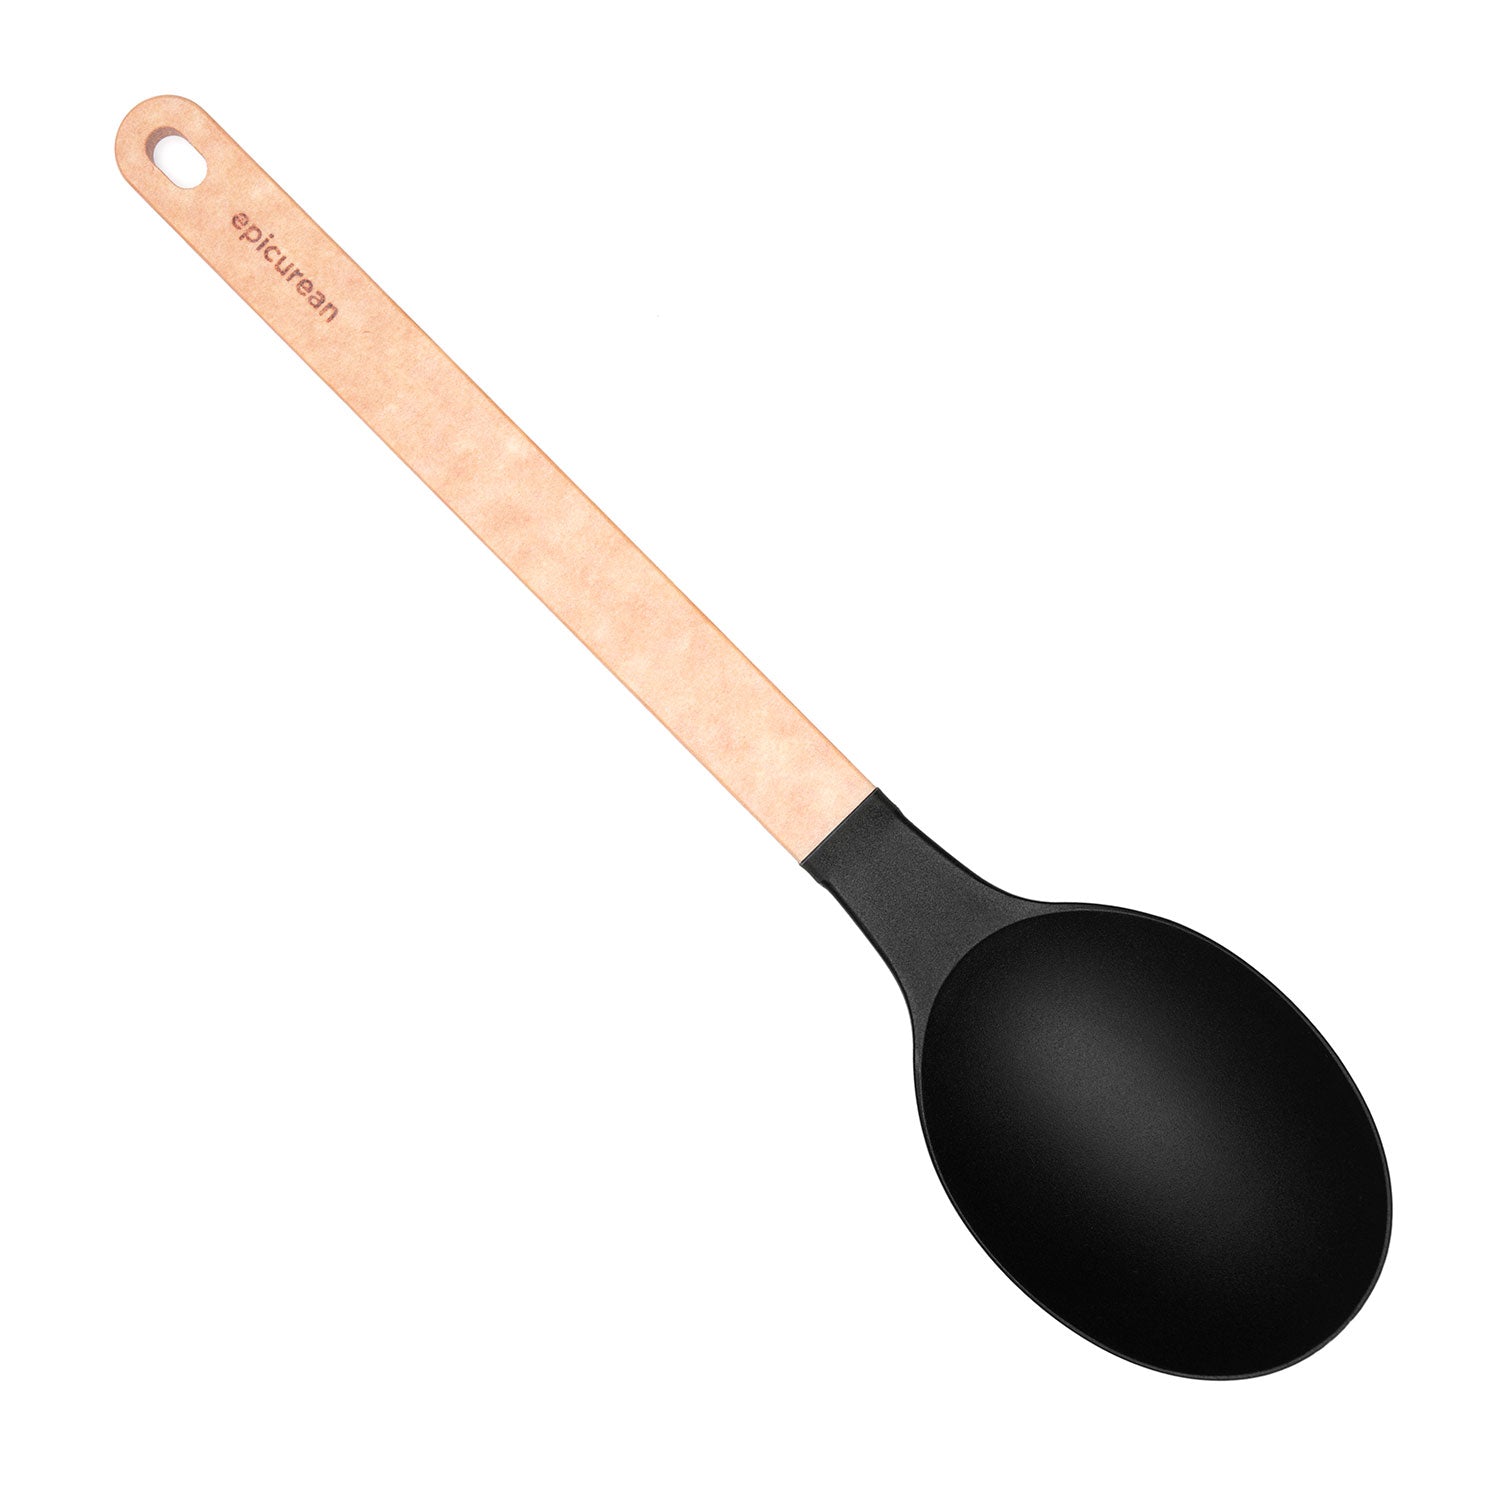 Epicurean Gourmet Series Large Spoon